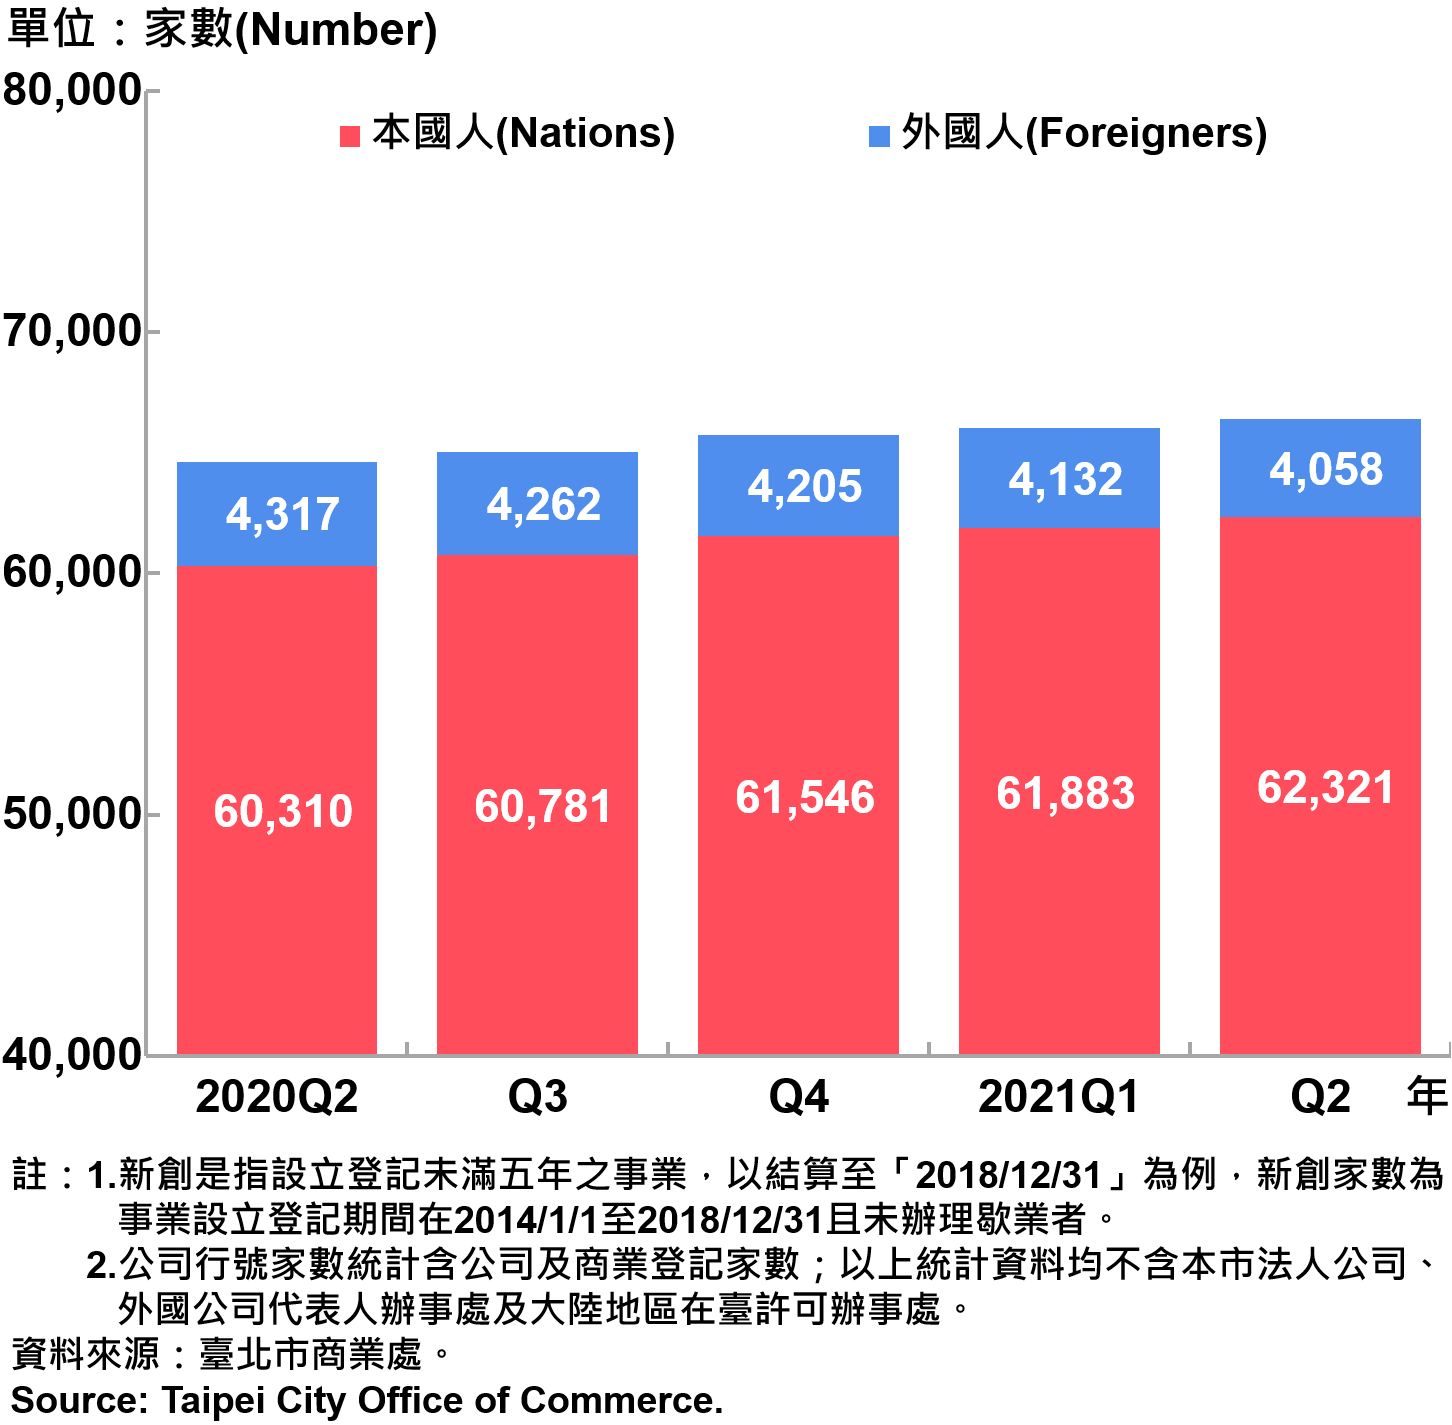 臺北市新創公司負責人-本國人與外國人分布情形-現存家數—2021 Q2 Responsible Person of Newly Registered Companies In Taipei City by Nationality - Number of Current—2021Q2